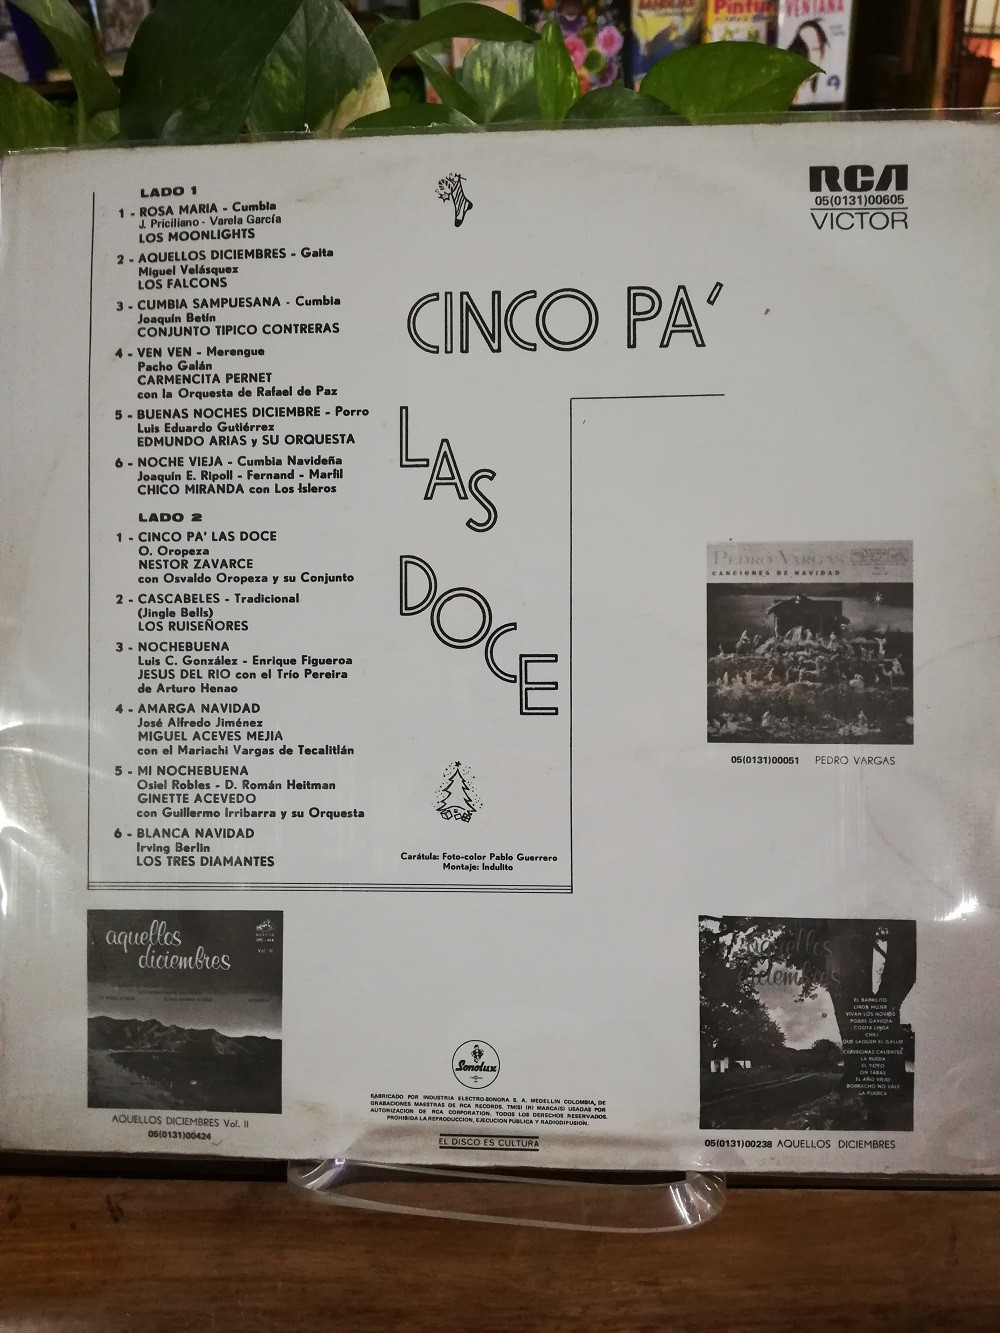 Imagen LP CINCO PA´ LAS DOCE - ARTISTAS VARIOS 2